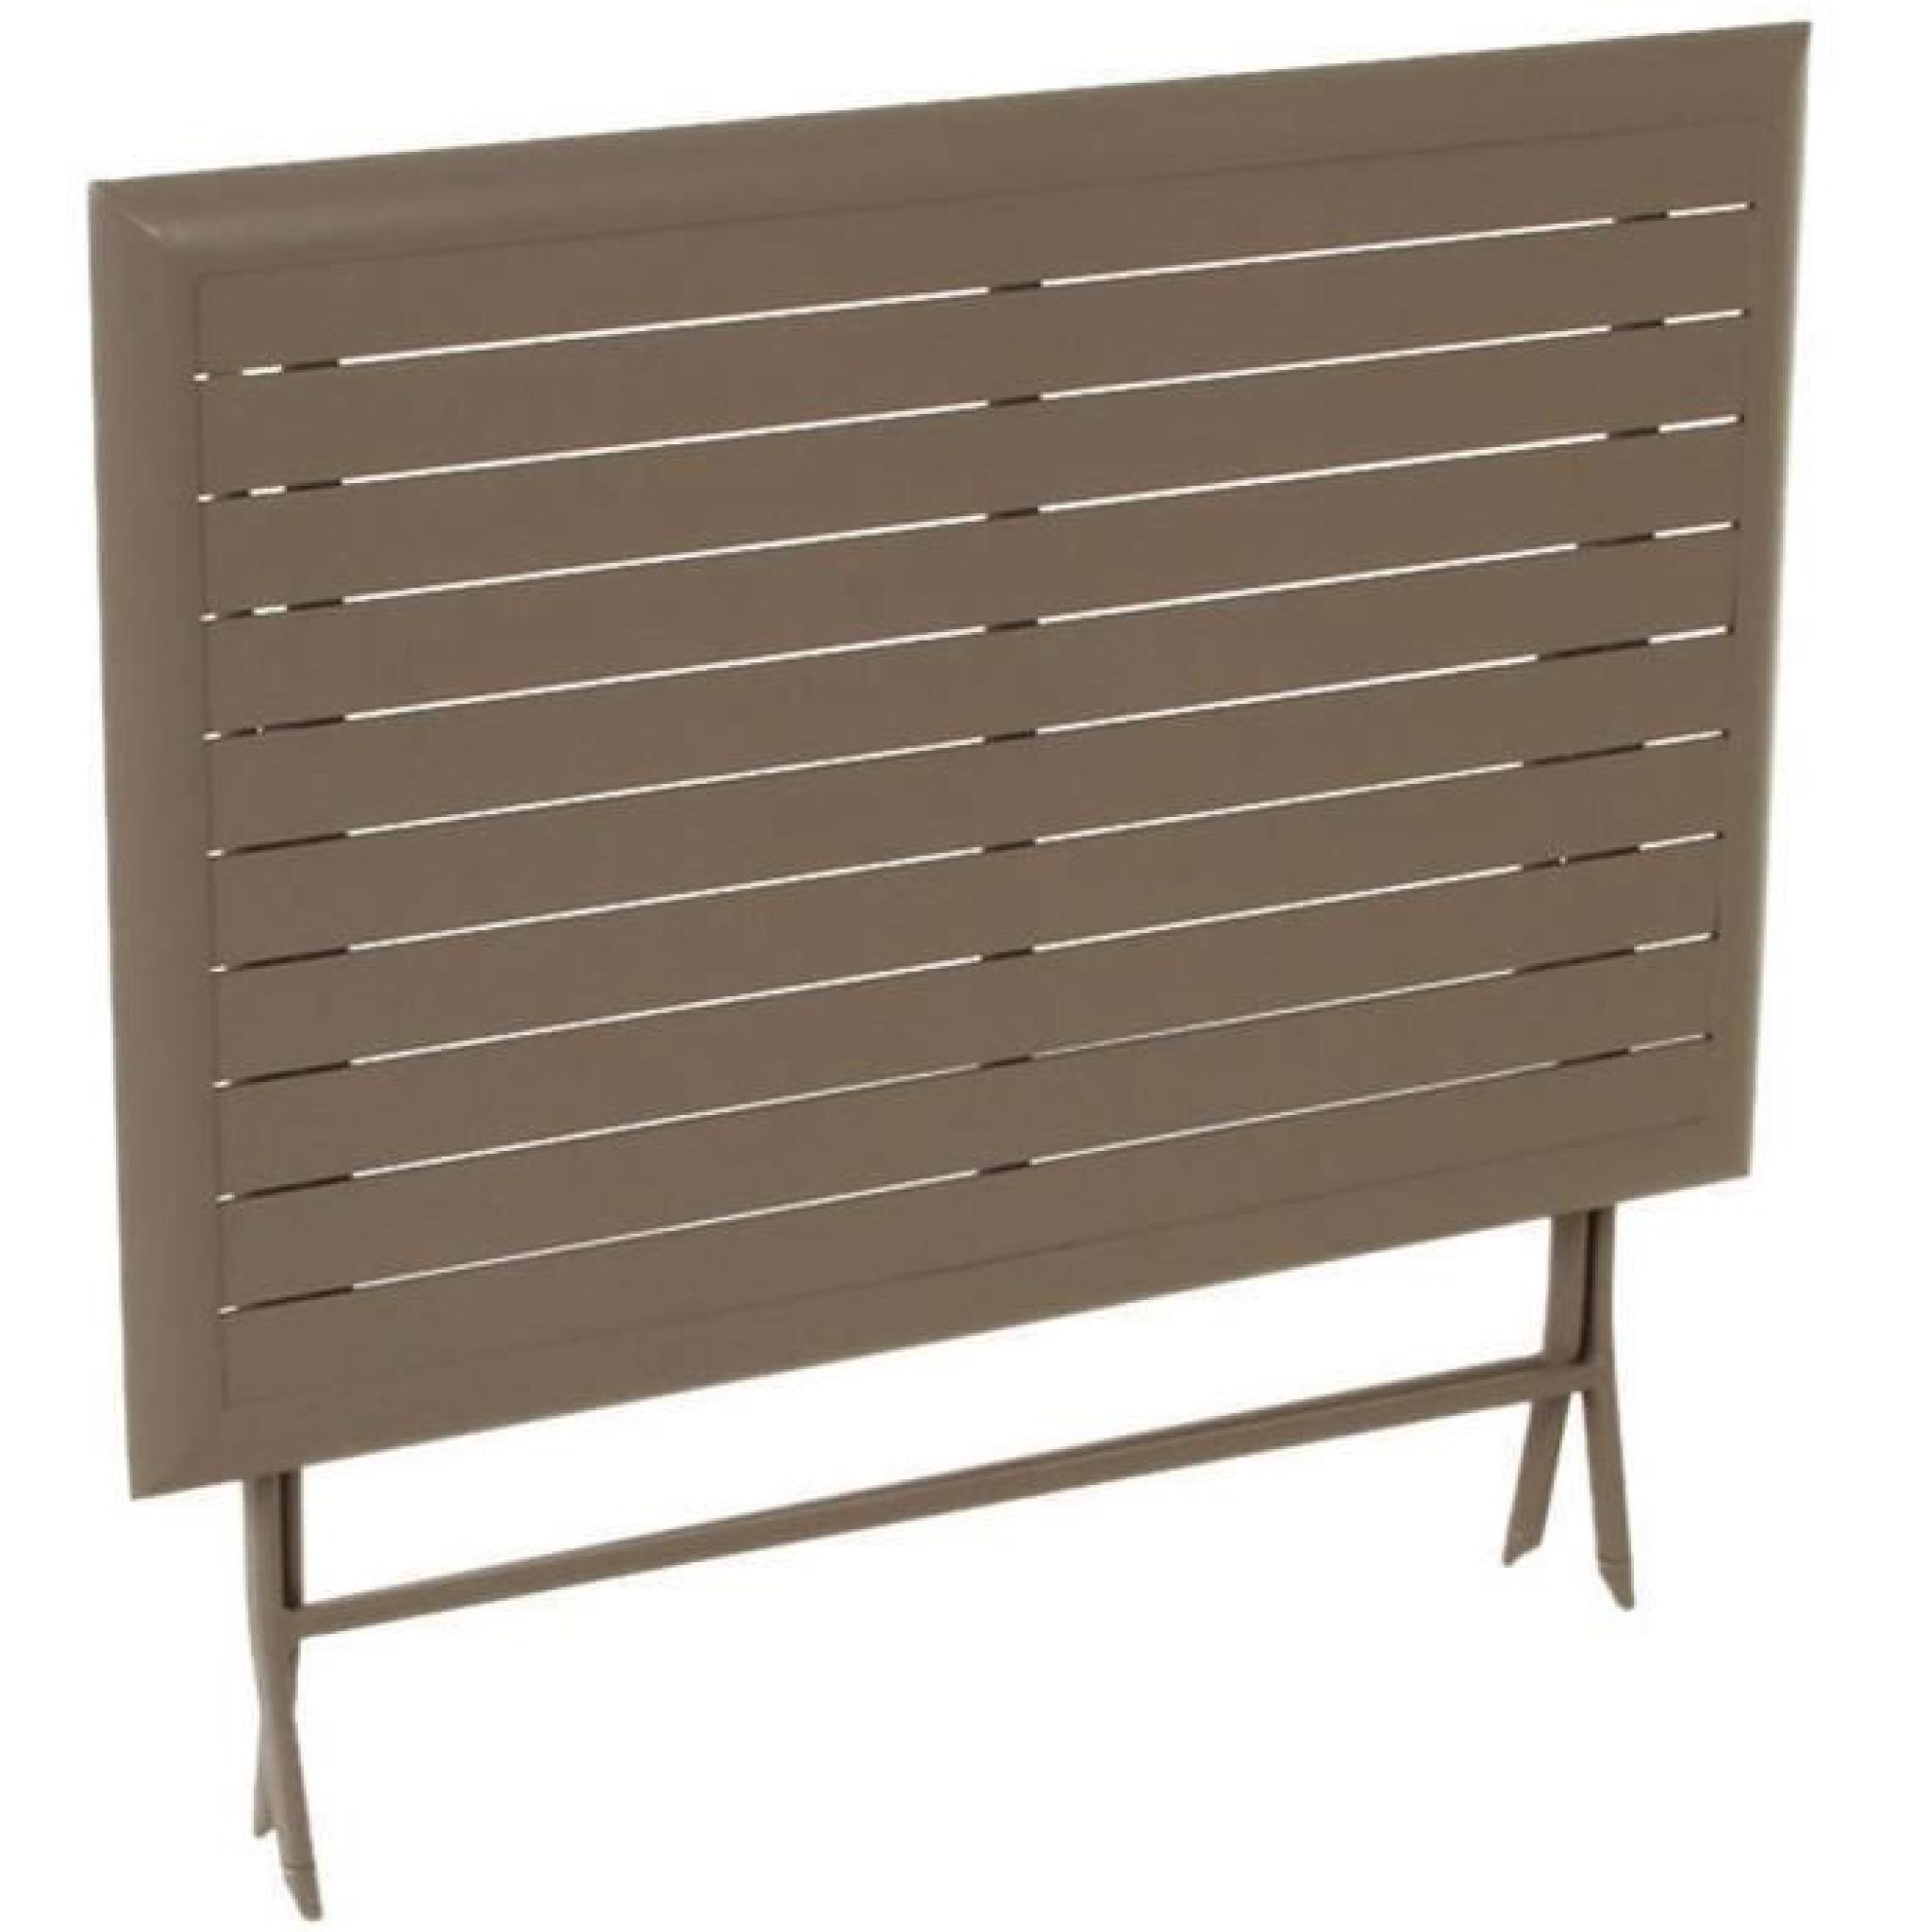 Table pliante rectangulaire en aluminium coloris taupe - Dim : L 150 x P 80 x H 71 cm  pas cher